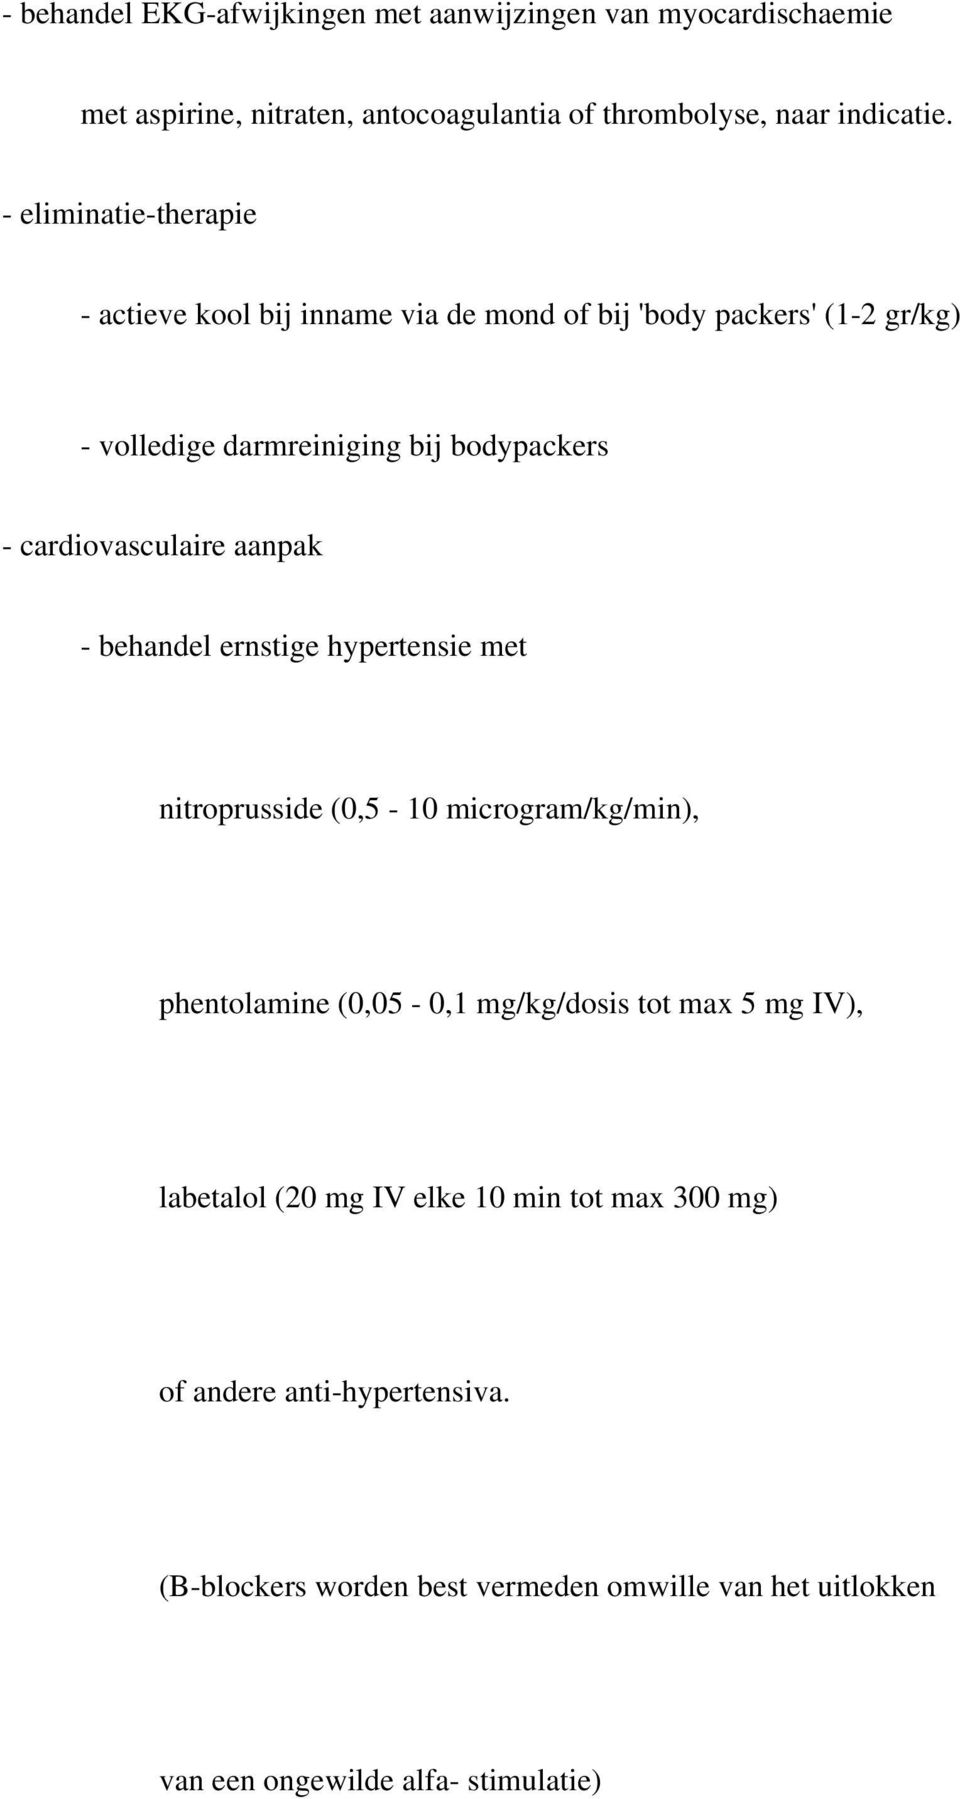 cardiovasculaire aanpak - behandel ernstige hypertensie met nitroprusside (0,5-10 microgram/kg/min), phentolamine (0,05-0,1 mg/kg/dosis tot max 5 mg